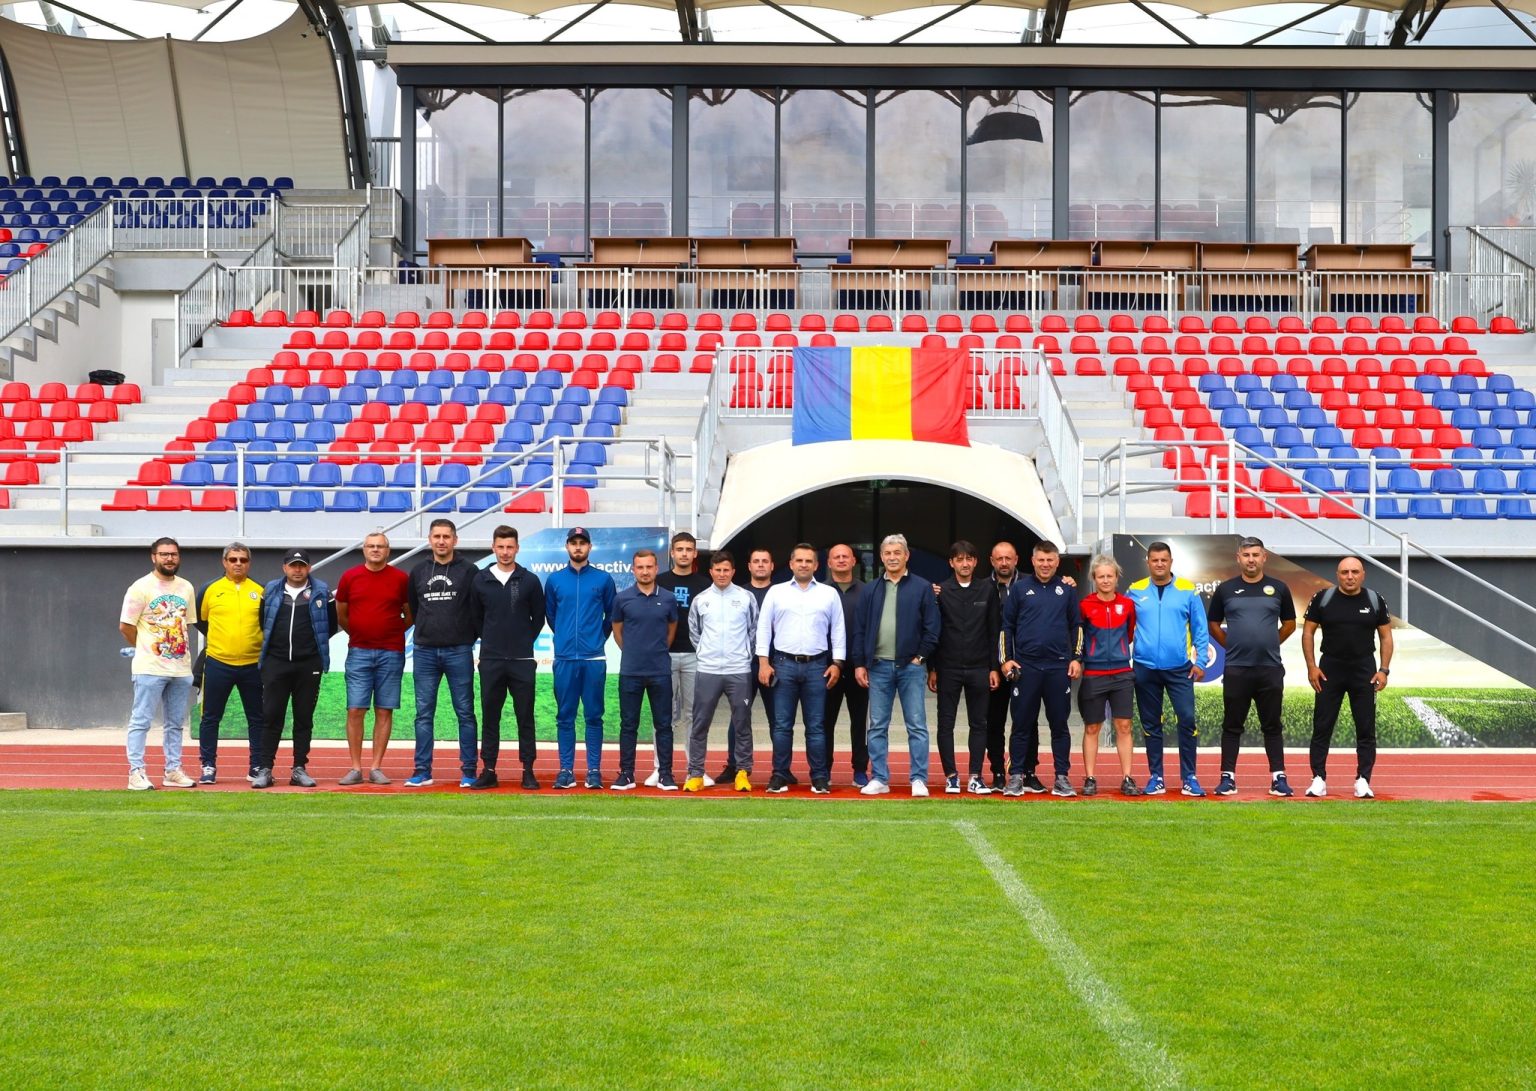 Pe 1 iunie, Stadionul „Eugen Popescu” din Târgoviște, gazda a două evenimente sportive de anvergură organizate de Asociația Județeană de Fotbal Dâmbovița: Ziua Campionilor și finala Cupei României, faza județeană.